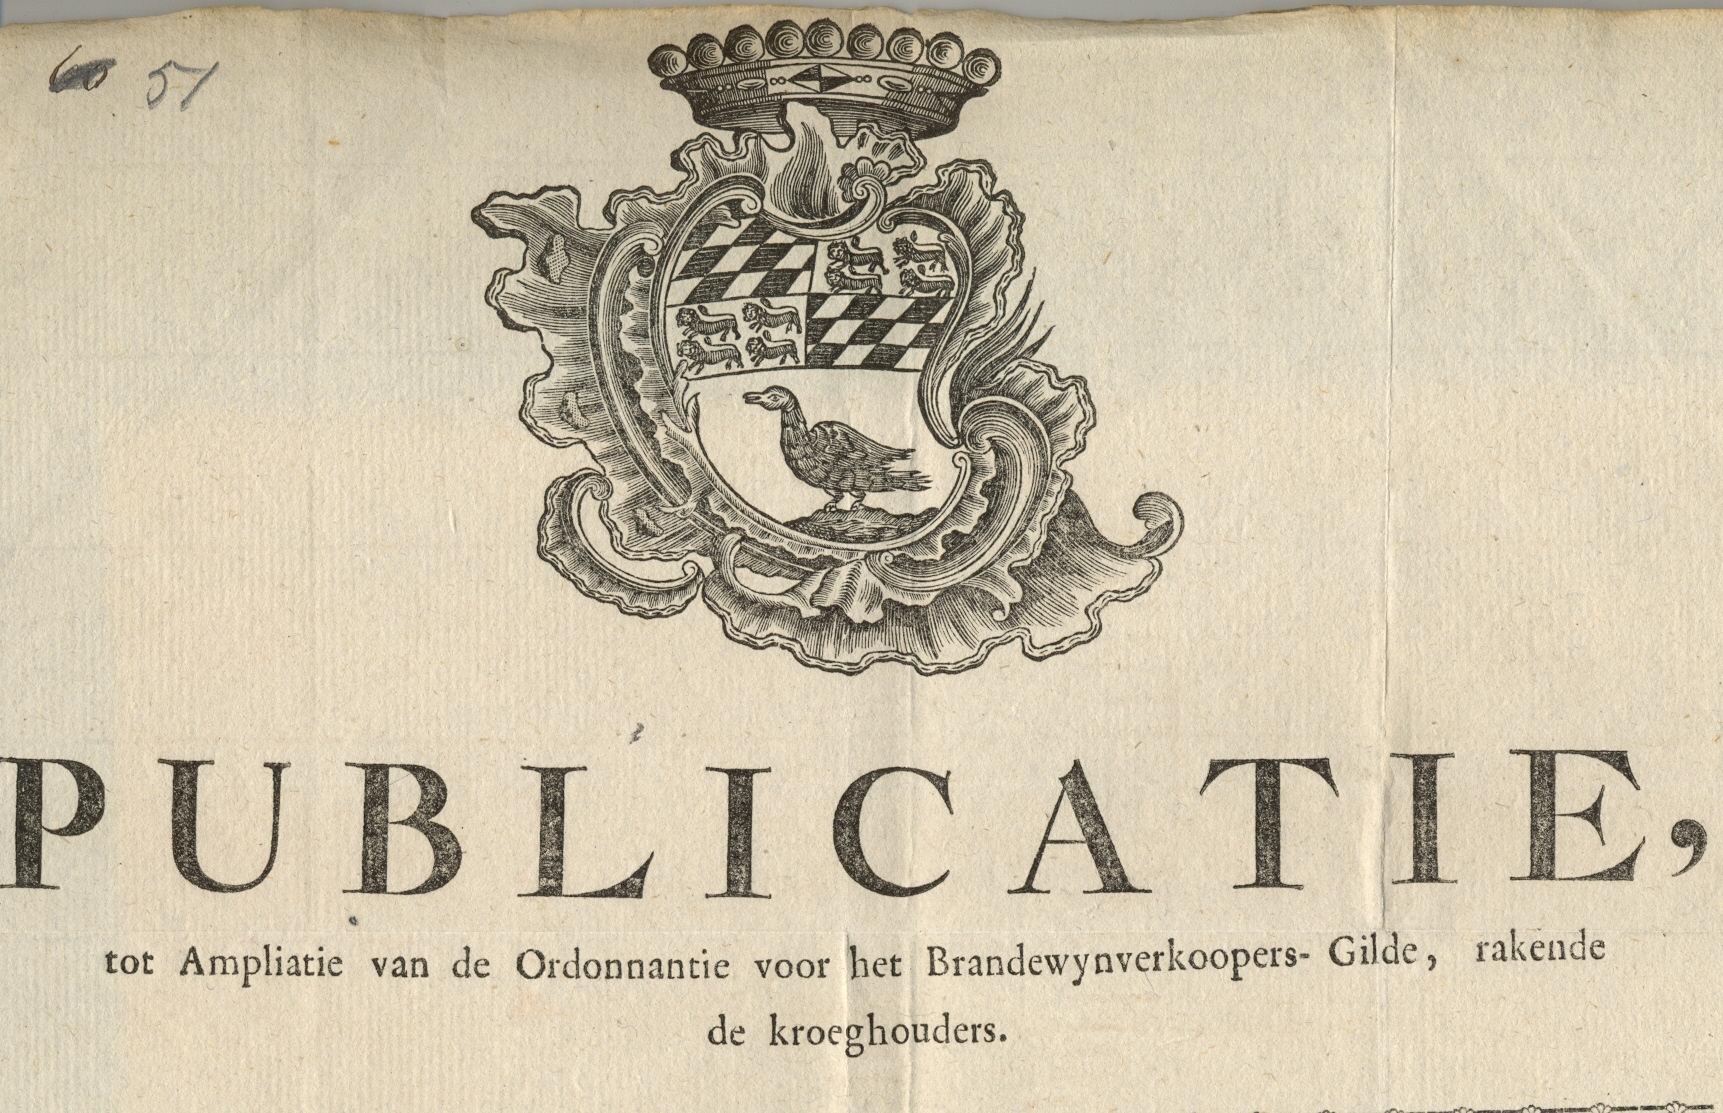 Publicatie van de wijziging van de ordonnantie voor de brandewijnverkopers, 1768.